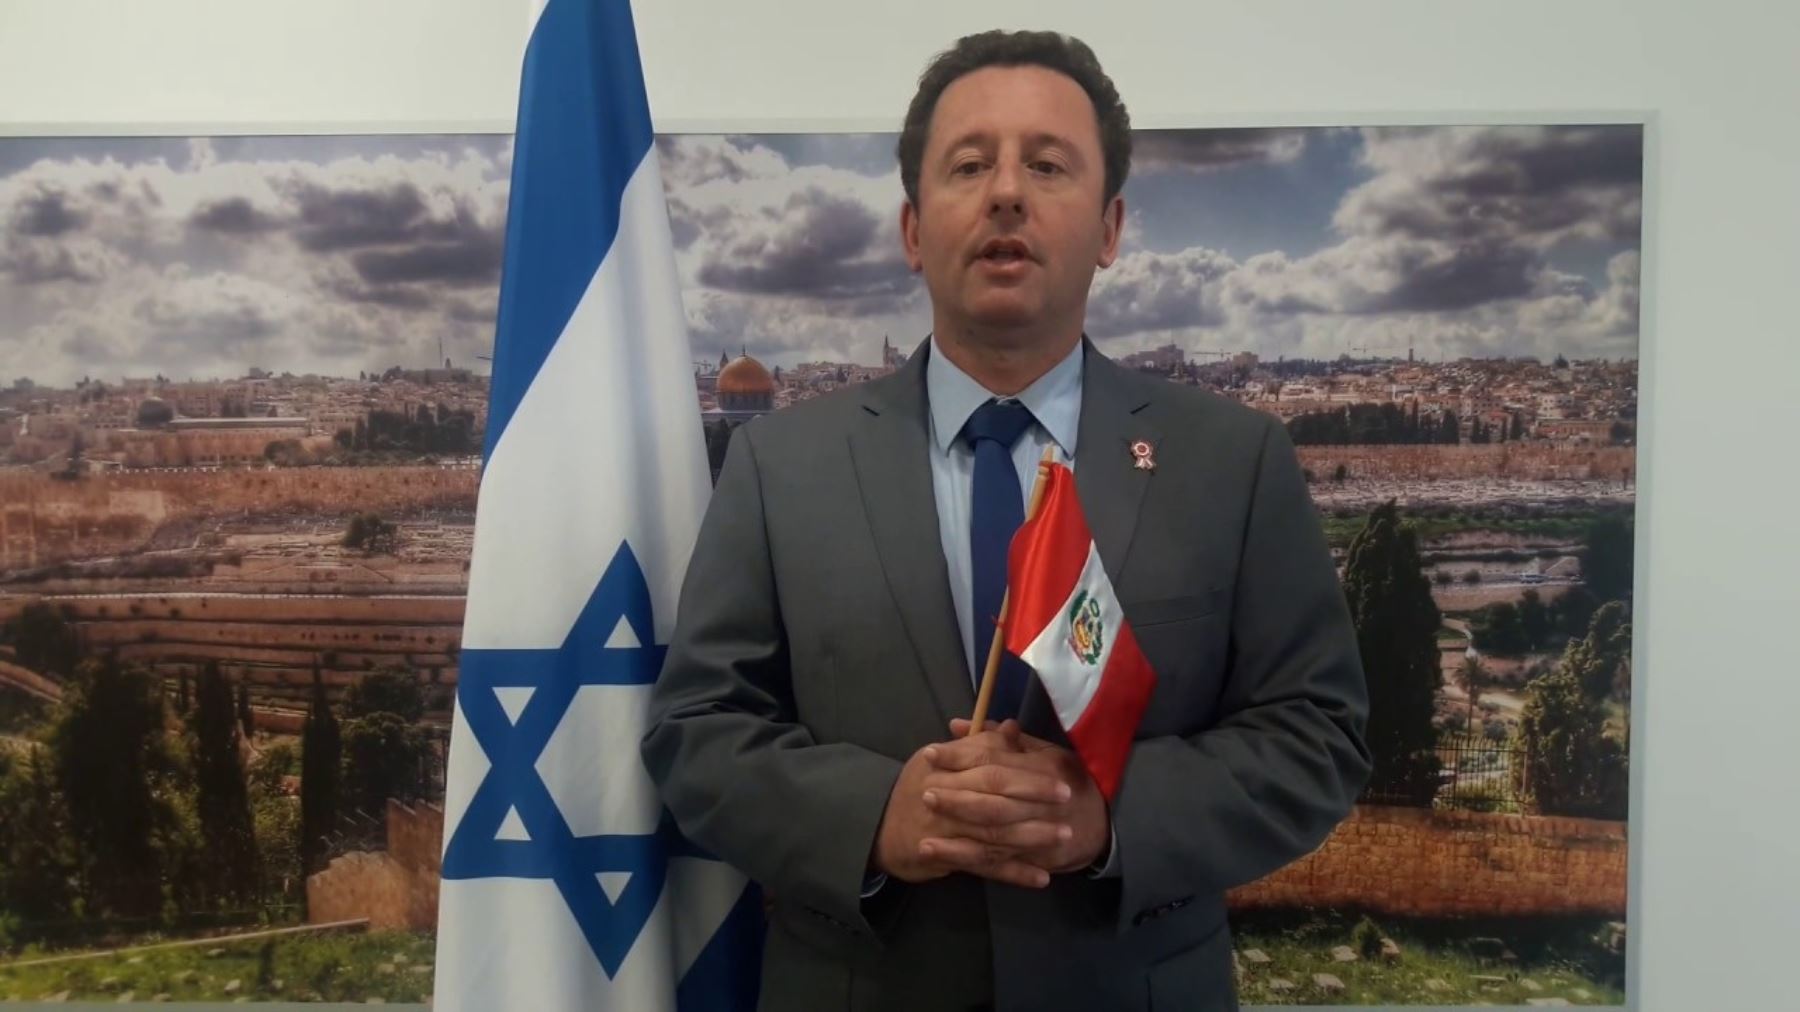 Embajador de Israel en el Perú, Raphael Singer, visitó por primera vez Trujillo, en la región La Libertad, y realizó varias actividades. Visitó fundos.